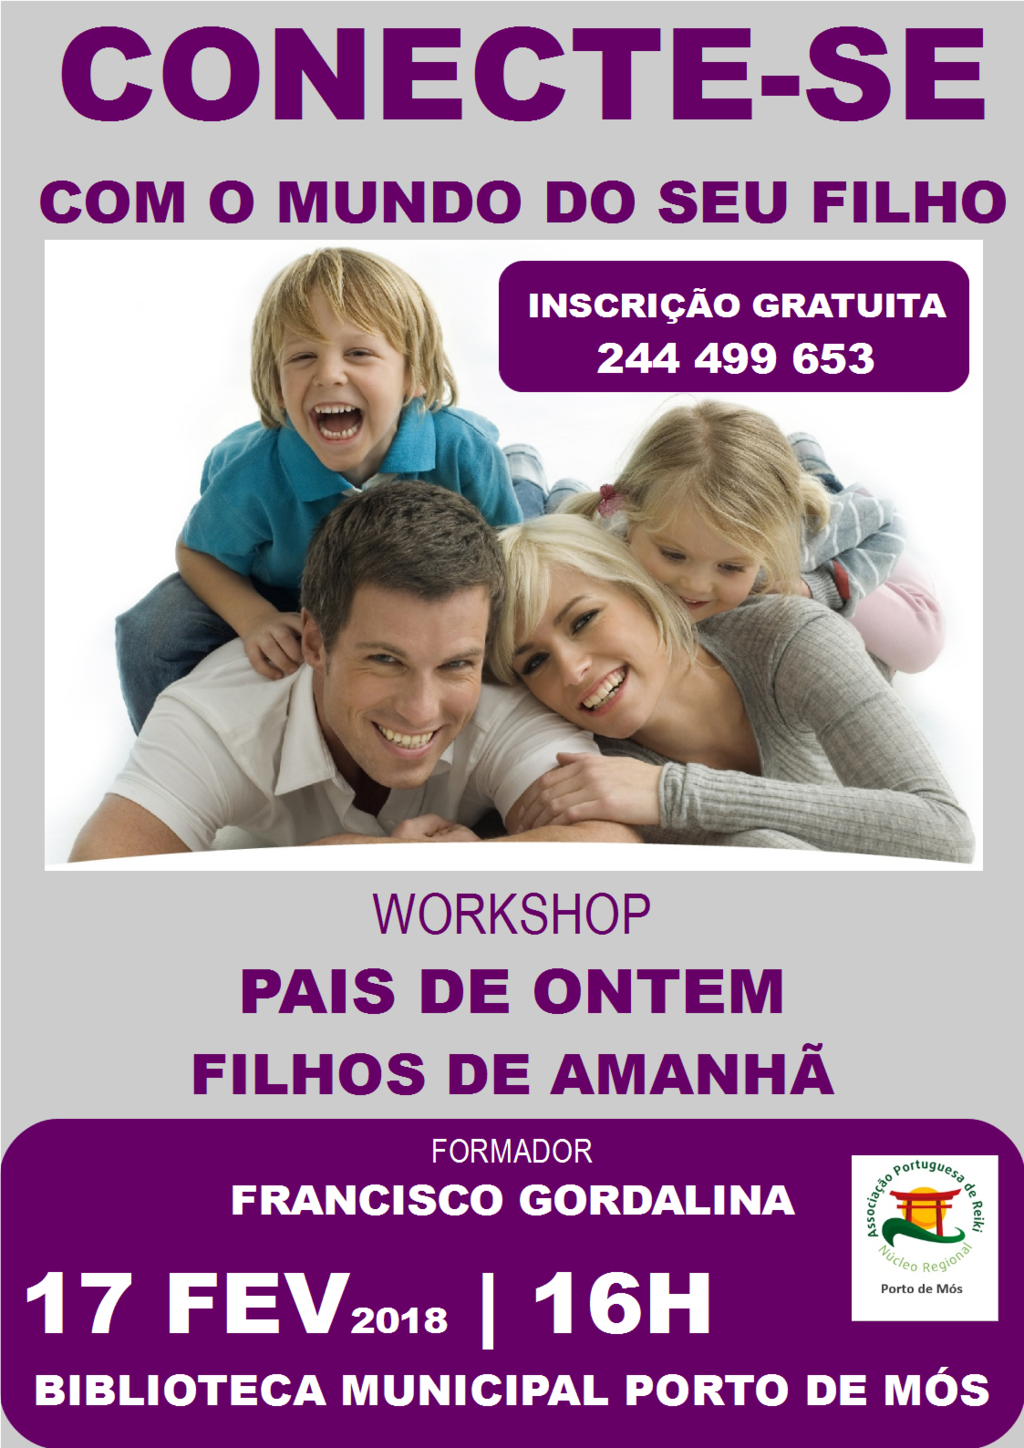 Workshop "Pais de ontem filhos de amanhã"